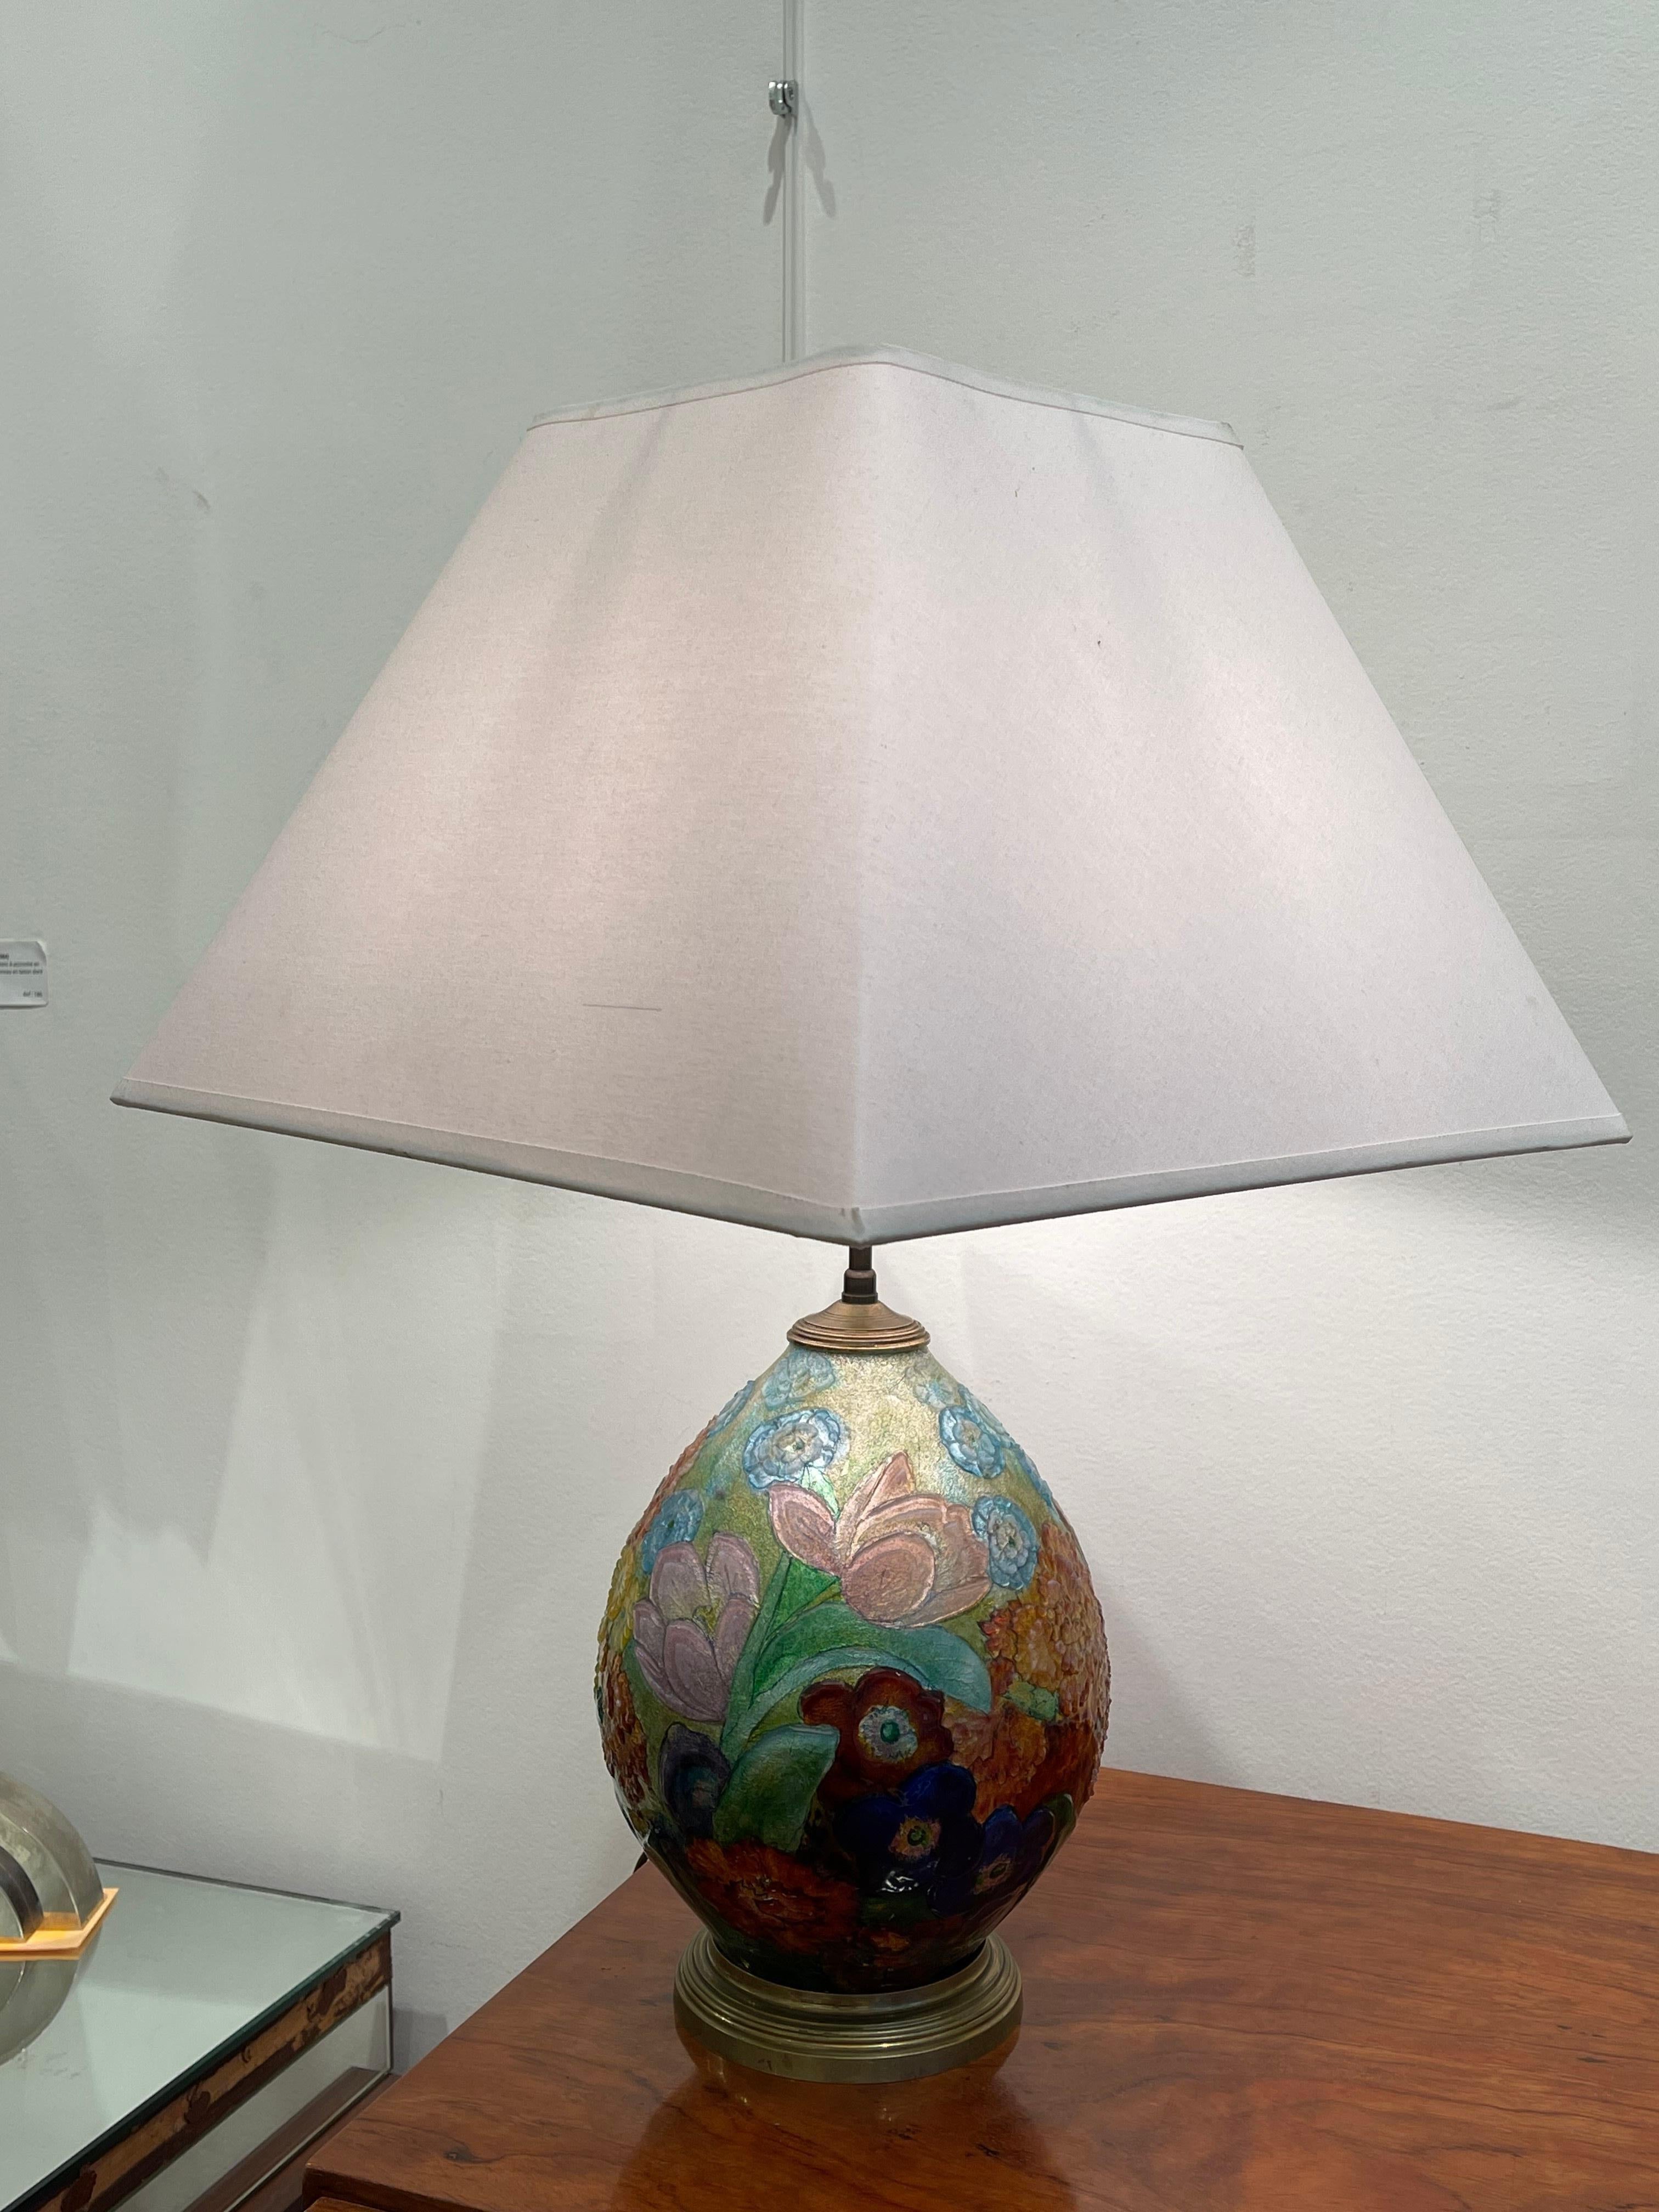 Exceptionnelle lampe de table de Camille Fauré (1874-1956) dont l'atelier se trouvait à Limoges (France). Il a la forme d'un œuf en cuivre entièrement recouvert d'émaux polychromes et translucides représentant des fleurs. La qualité de l'émail est